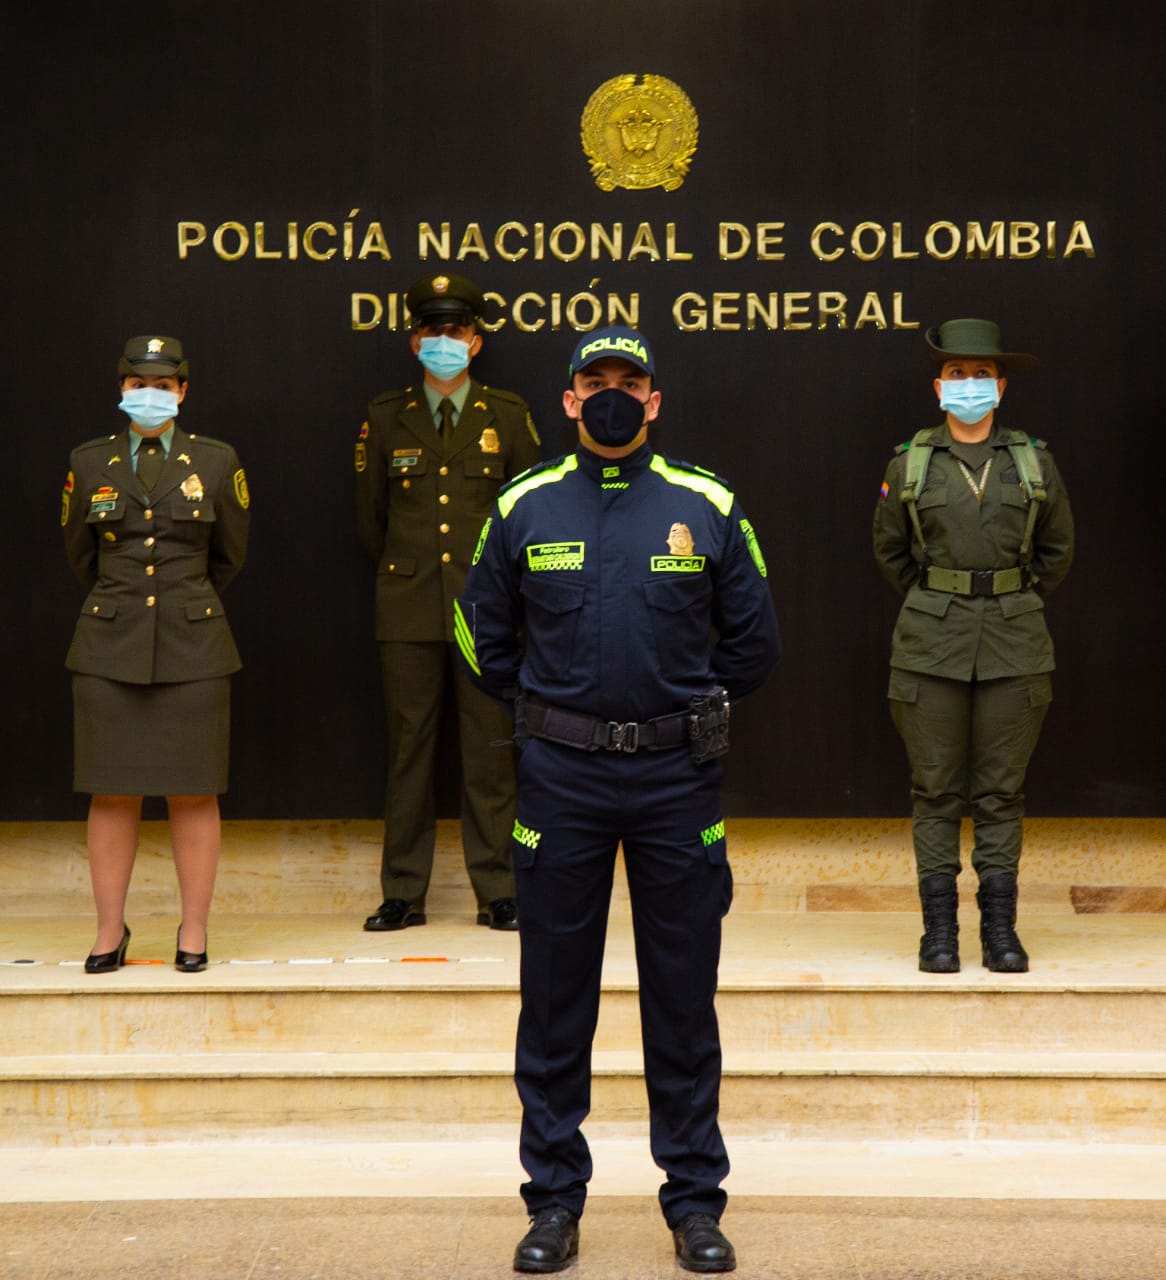 papel evidencia atributo Conozca los uniformes de la policía - Revista Seguridad 360